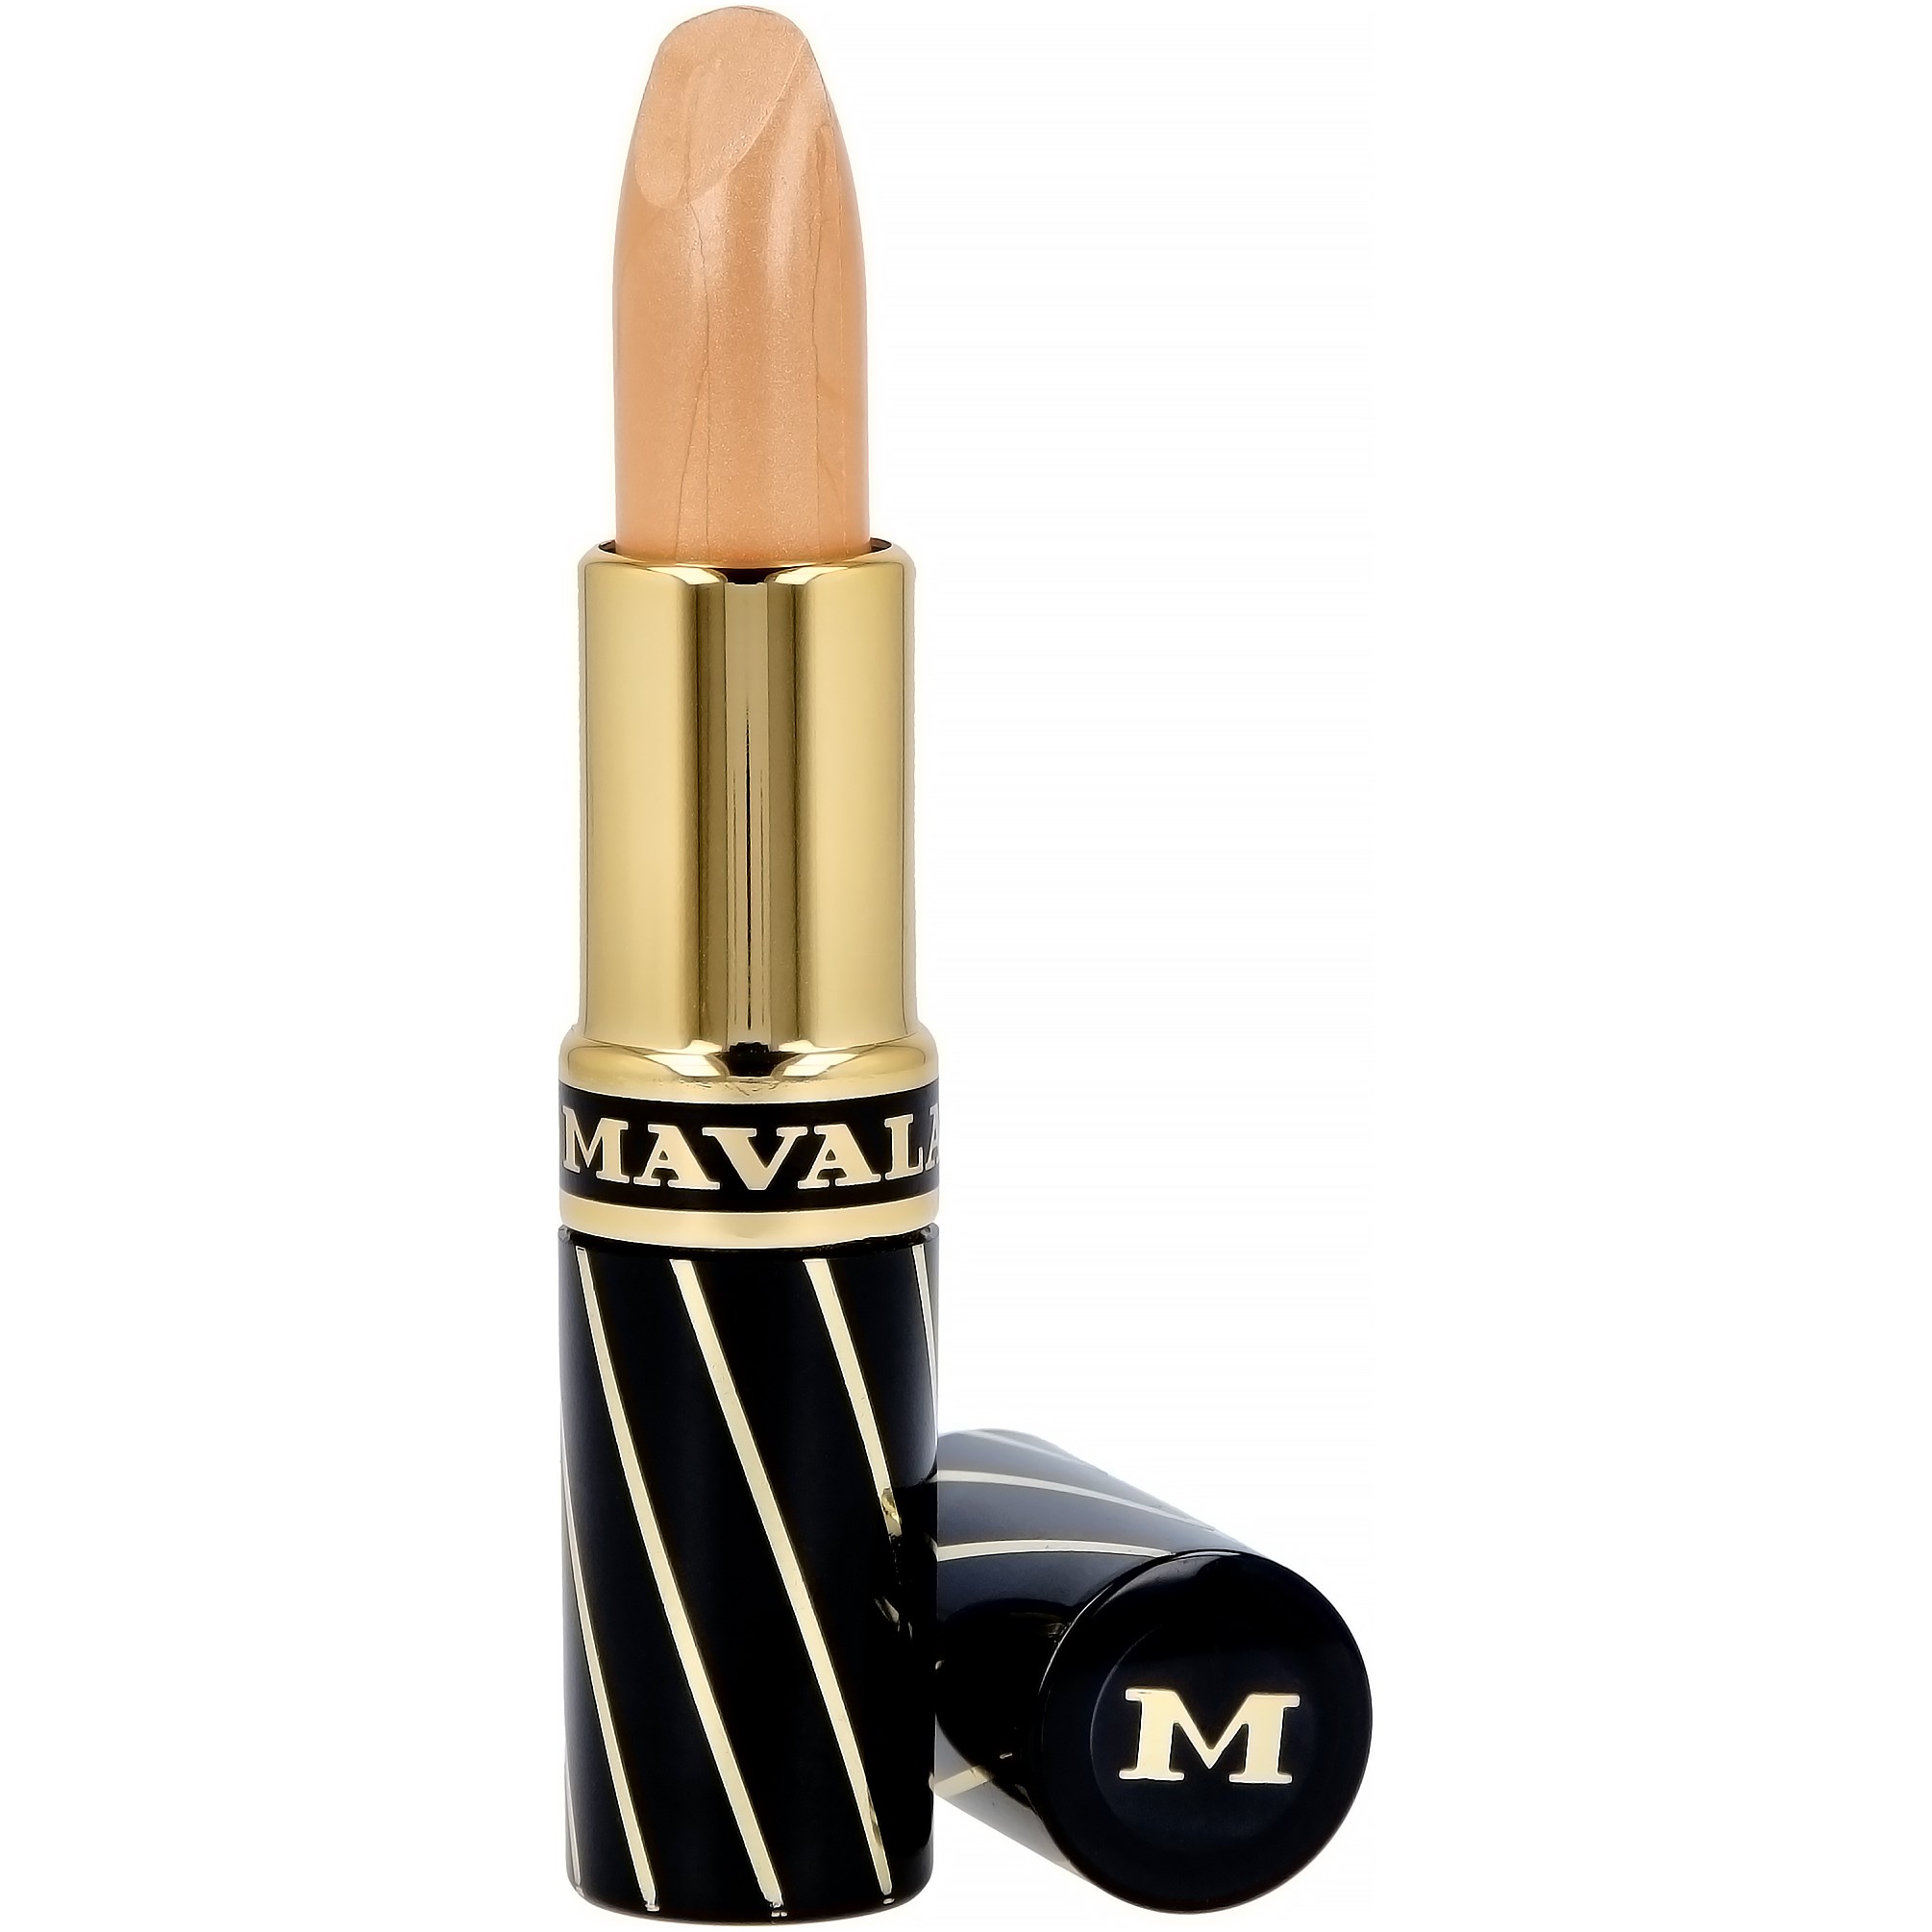 Mavala Mavalip Lipstick 195 Alaska